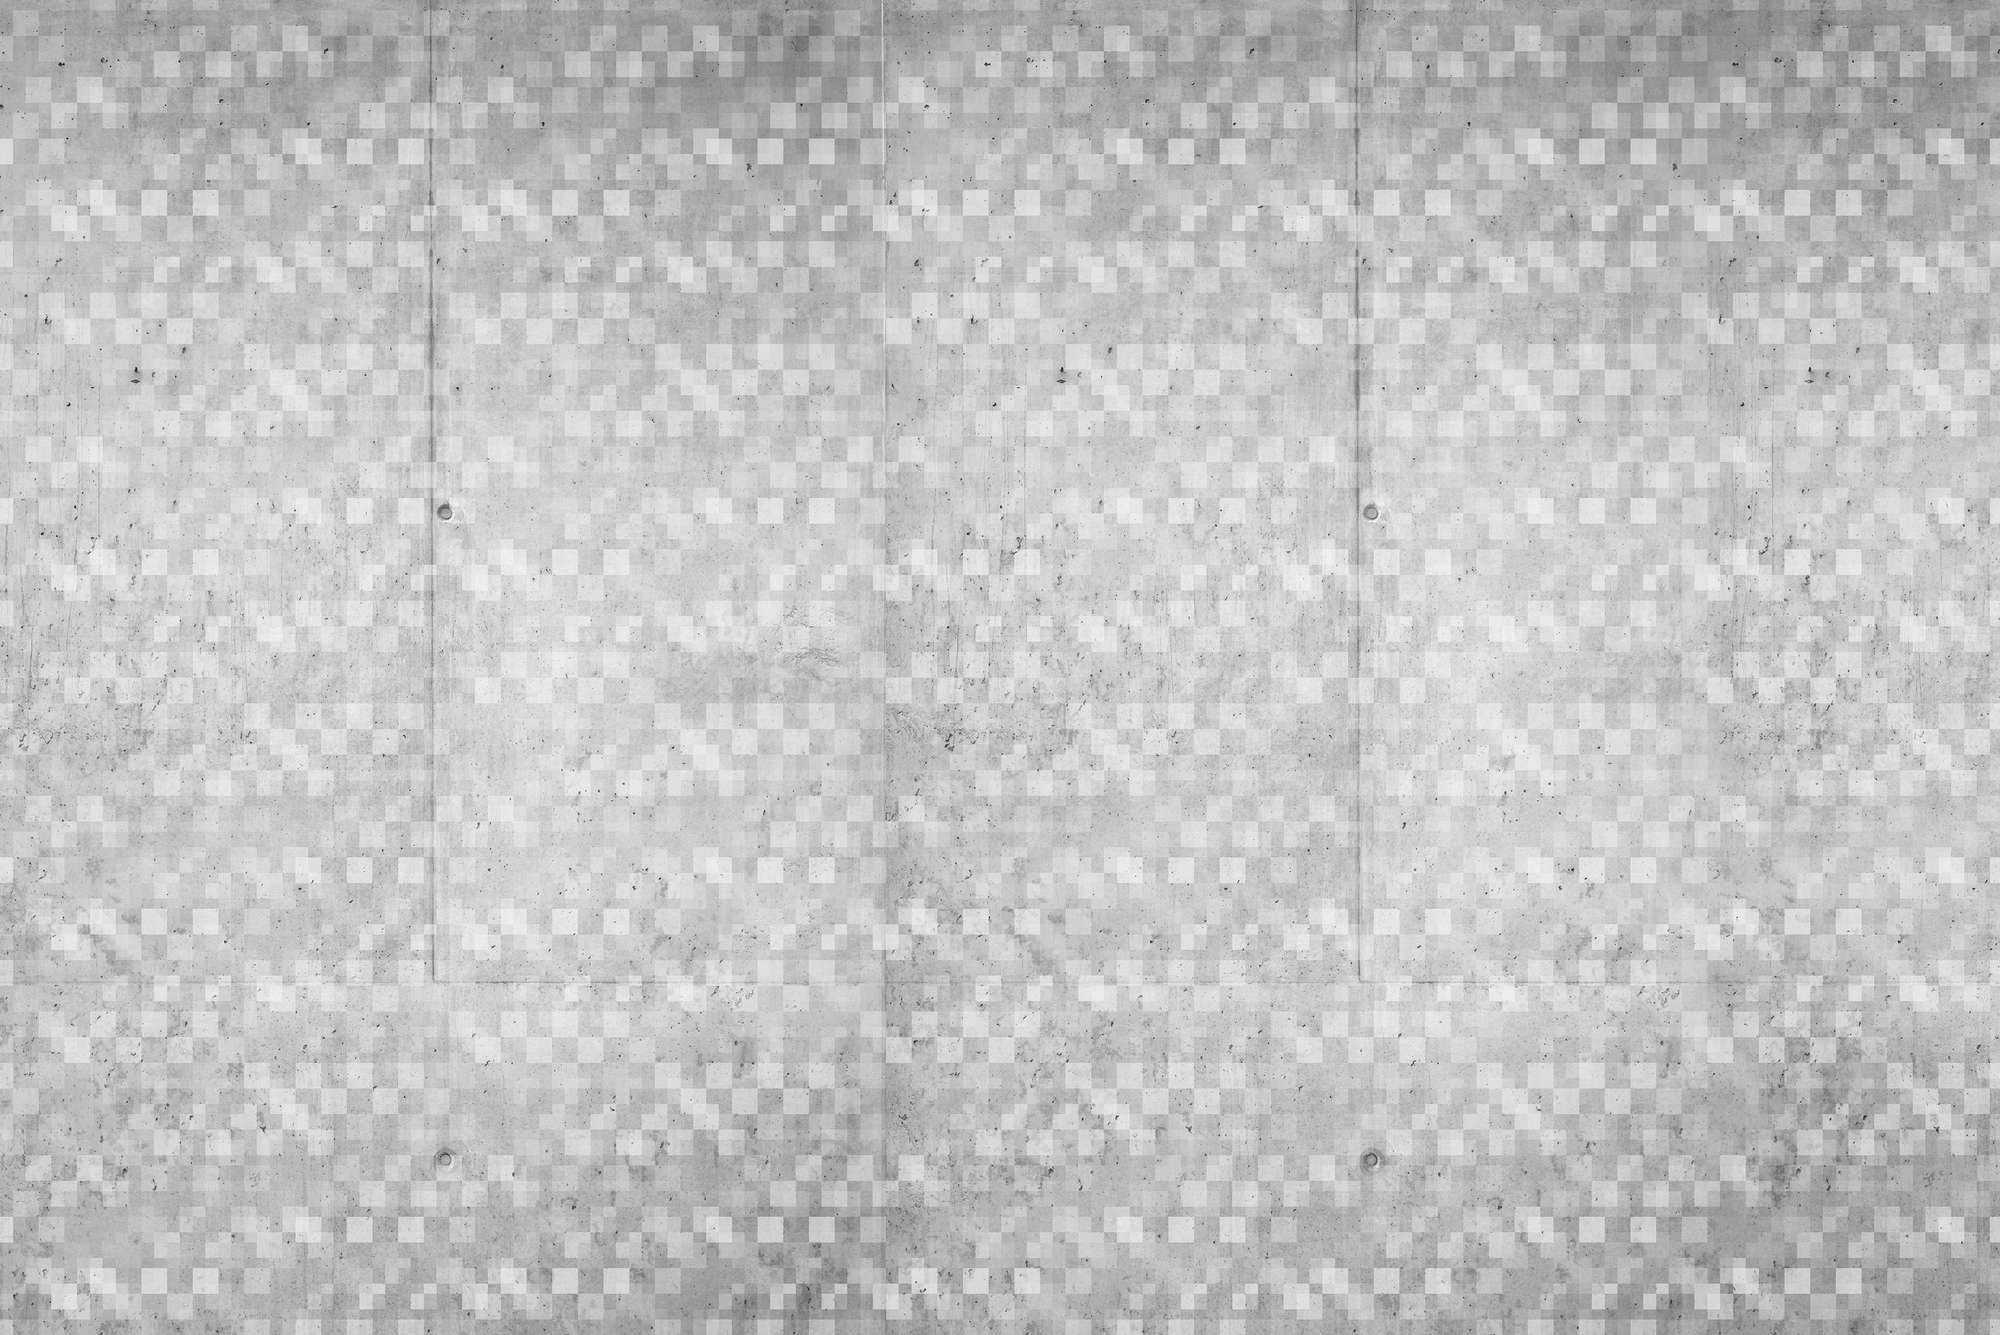             Papel pintado gráfico con motivo de cubos superpuestos gris sobre vellón liso mate
        